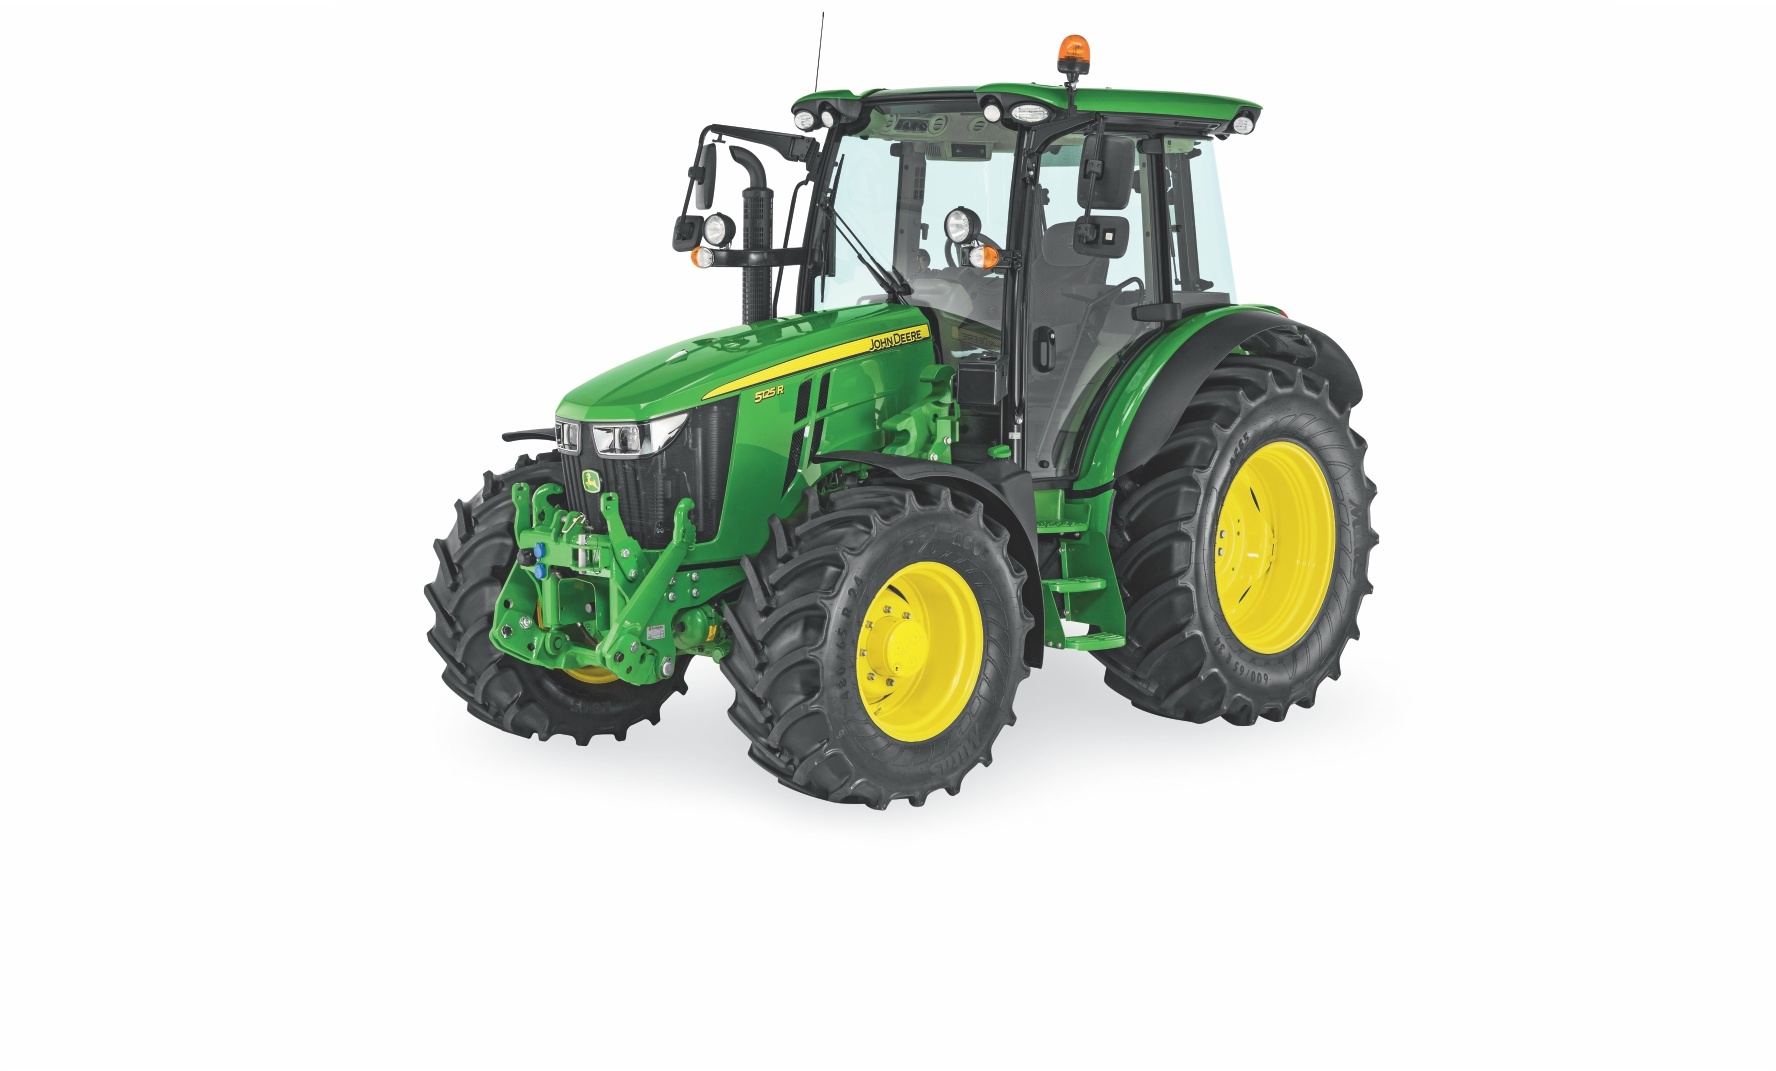 Performanțe îmbunătățite și un design compact
Design-ul compact a evoluat. Debordând de putere și cu numeroase opțiuni care asigură versatilitatea și confortul, noul 5R este singurul din clasa sa. Este un tractor multifuncțional si este tot ceea ce v-ați dorit vreodată.

În sfârsit există un tractor ușor și agil care vă permite să efectuați operațiuni cu încărcături mari – atât în față cât și în spate. Construit pentru versatilitate maximă, Tractorul 5R poate fi cu ușurință echipat cu încărcător frontal Seria R, și vă oferă aceleași performanțe excelente pe șosea și pe câmp. Acest tractor este cât se poate de potrivit pentru afacerea dvs.: performanțe remarcabile în condiții de consum redus de combustibil, confortabil și ușor de utilizat pentru finalizarea oricăror activități – mai multe, mai rapid, mai bine.